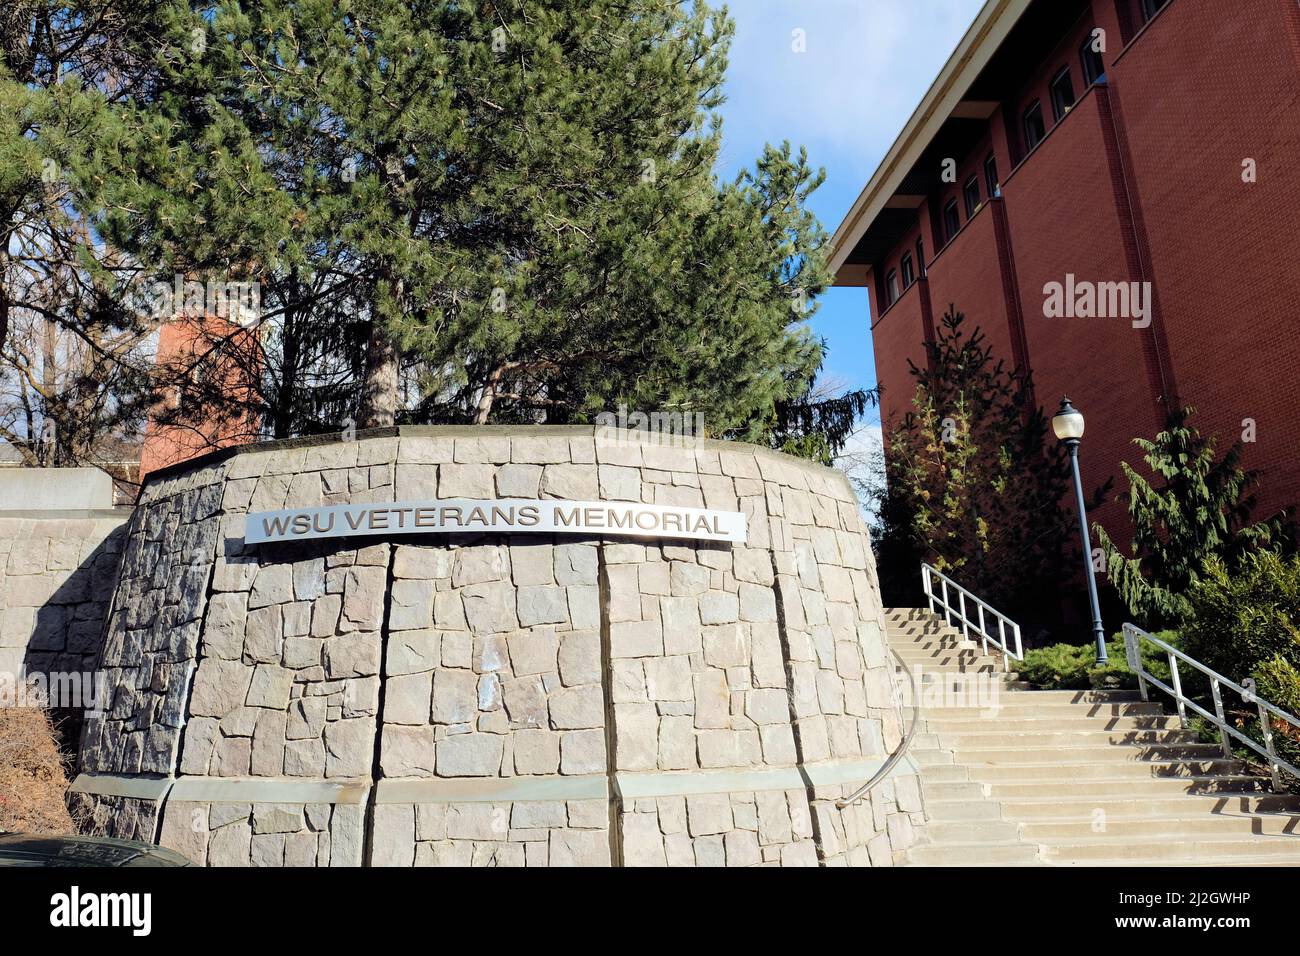 WSU Veterans Memorial, am Veterans Way auf dem Campus der Washington State University, ehrt Studenten, Dozenten und Mitarbeiter, die im Kampf ums Leben kamen. Stockfoto